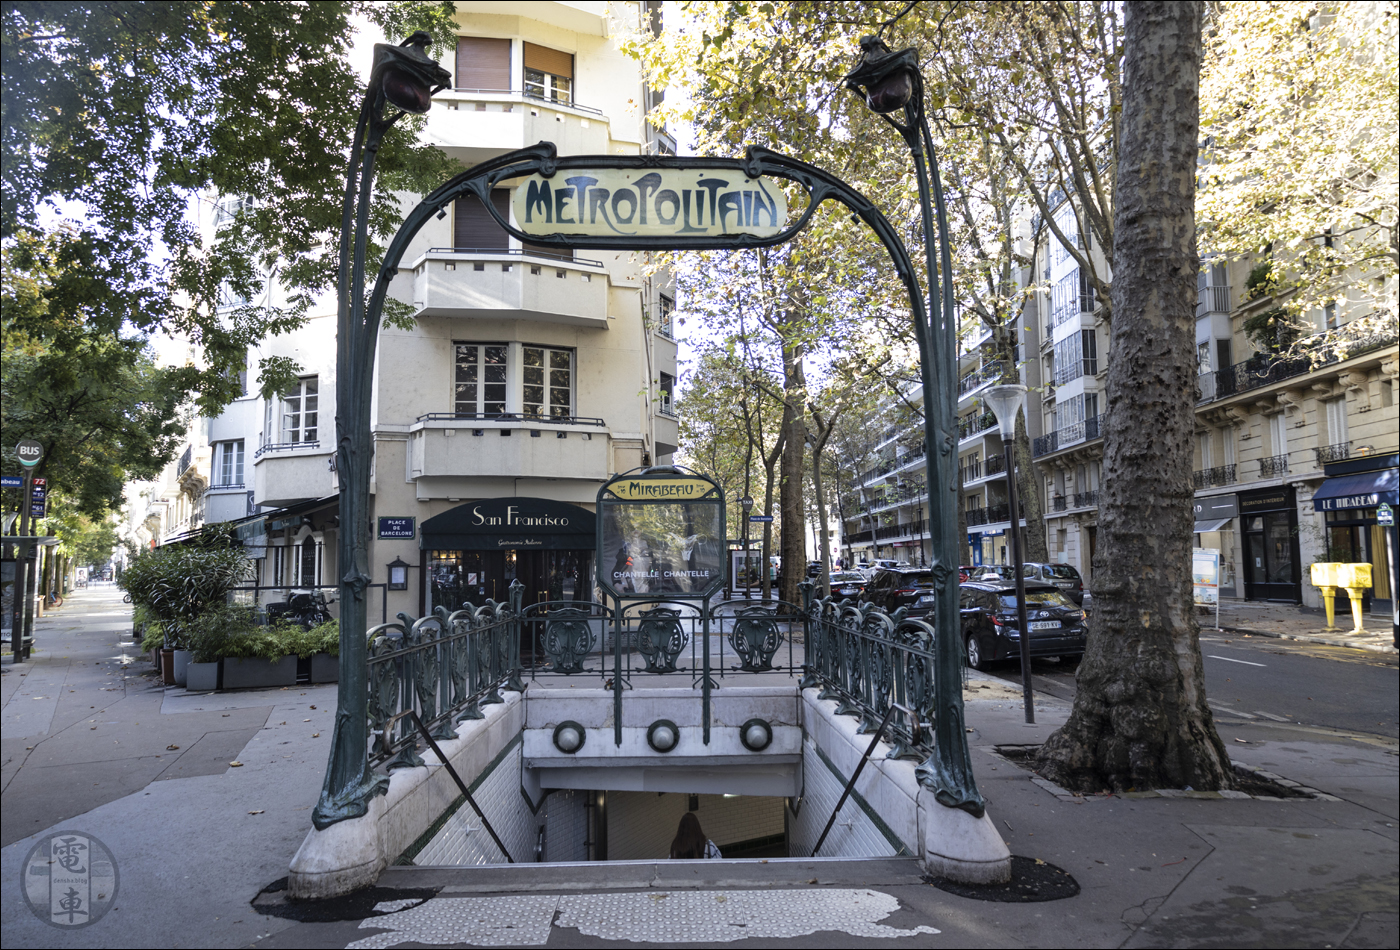 A párizsi metró Mirabeau megállójának 3-as számú bejárata. A korlátban helyet kapott, pajzsszerű objektumokban (hivatalos nevén escutcheonokban) a metrót szimbolizáló „M” betűt is megfigyelhetjük.